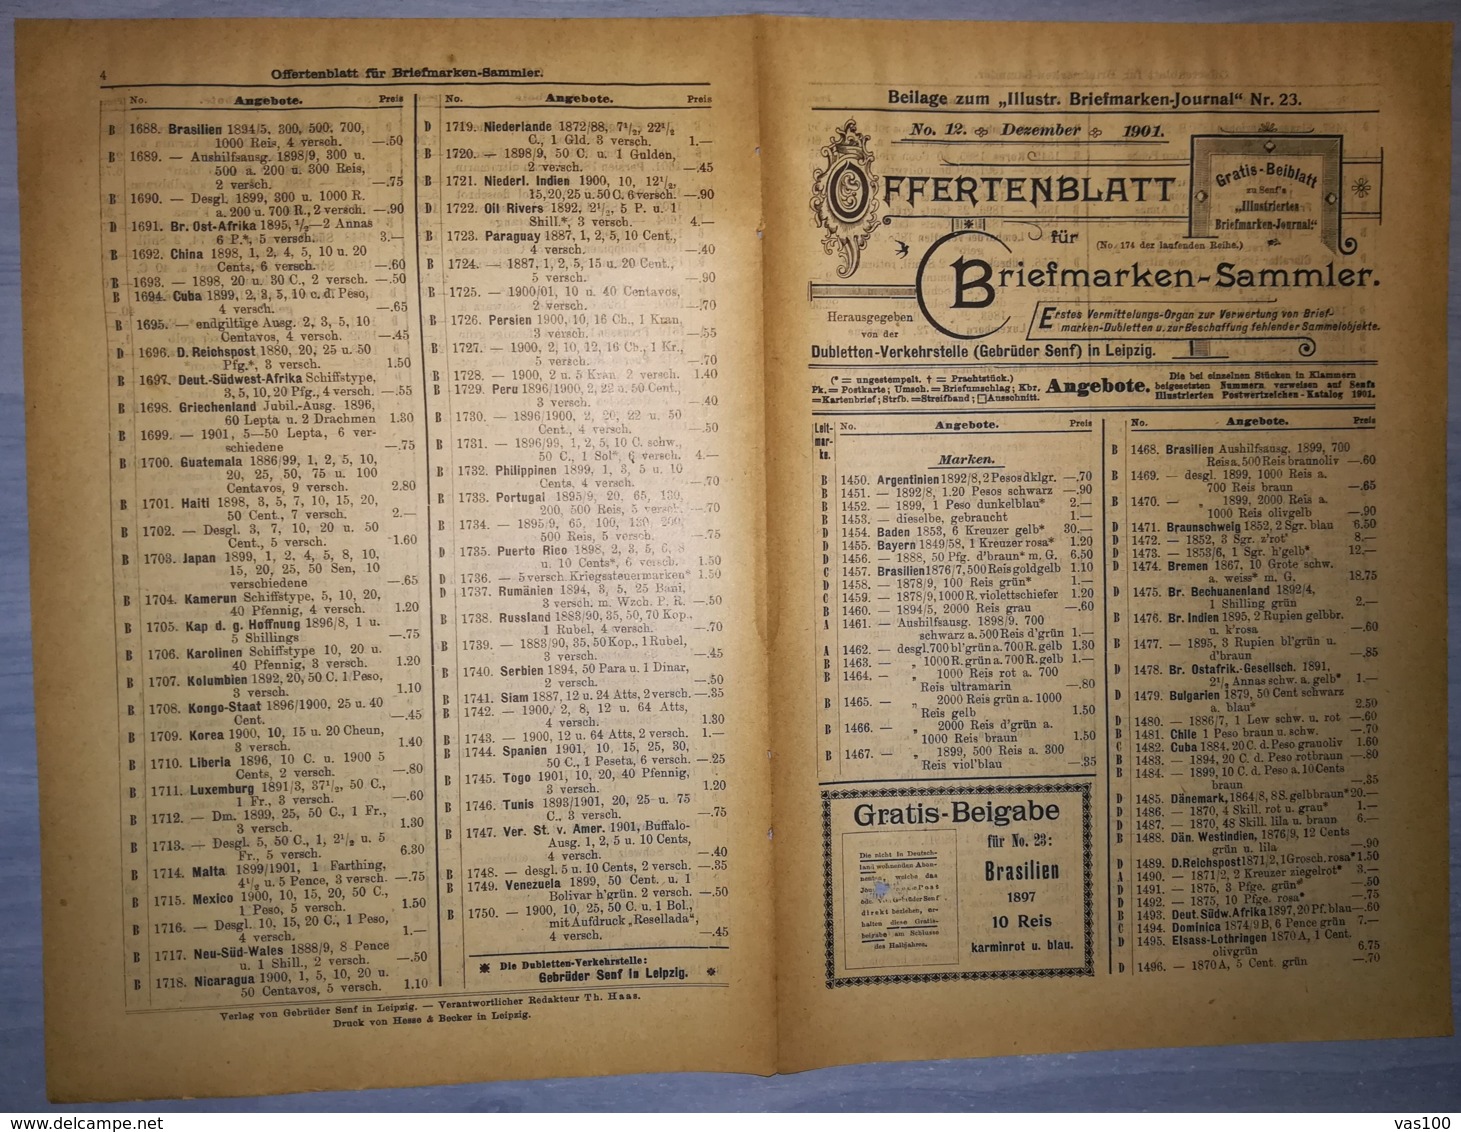 ILLUSTRATED STAMPS JOURNAL- ILLUSTRIERTES BRIEFMARKEN JOURNAL MAGAZINE SUPPLEMENT, PRICE LIST, LEIPZIG, 1901, GERMANY - German (until 1940)